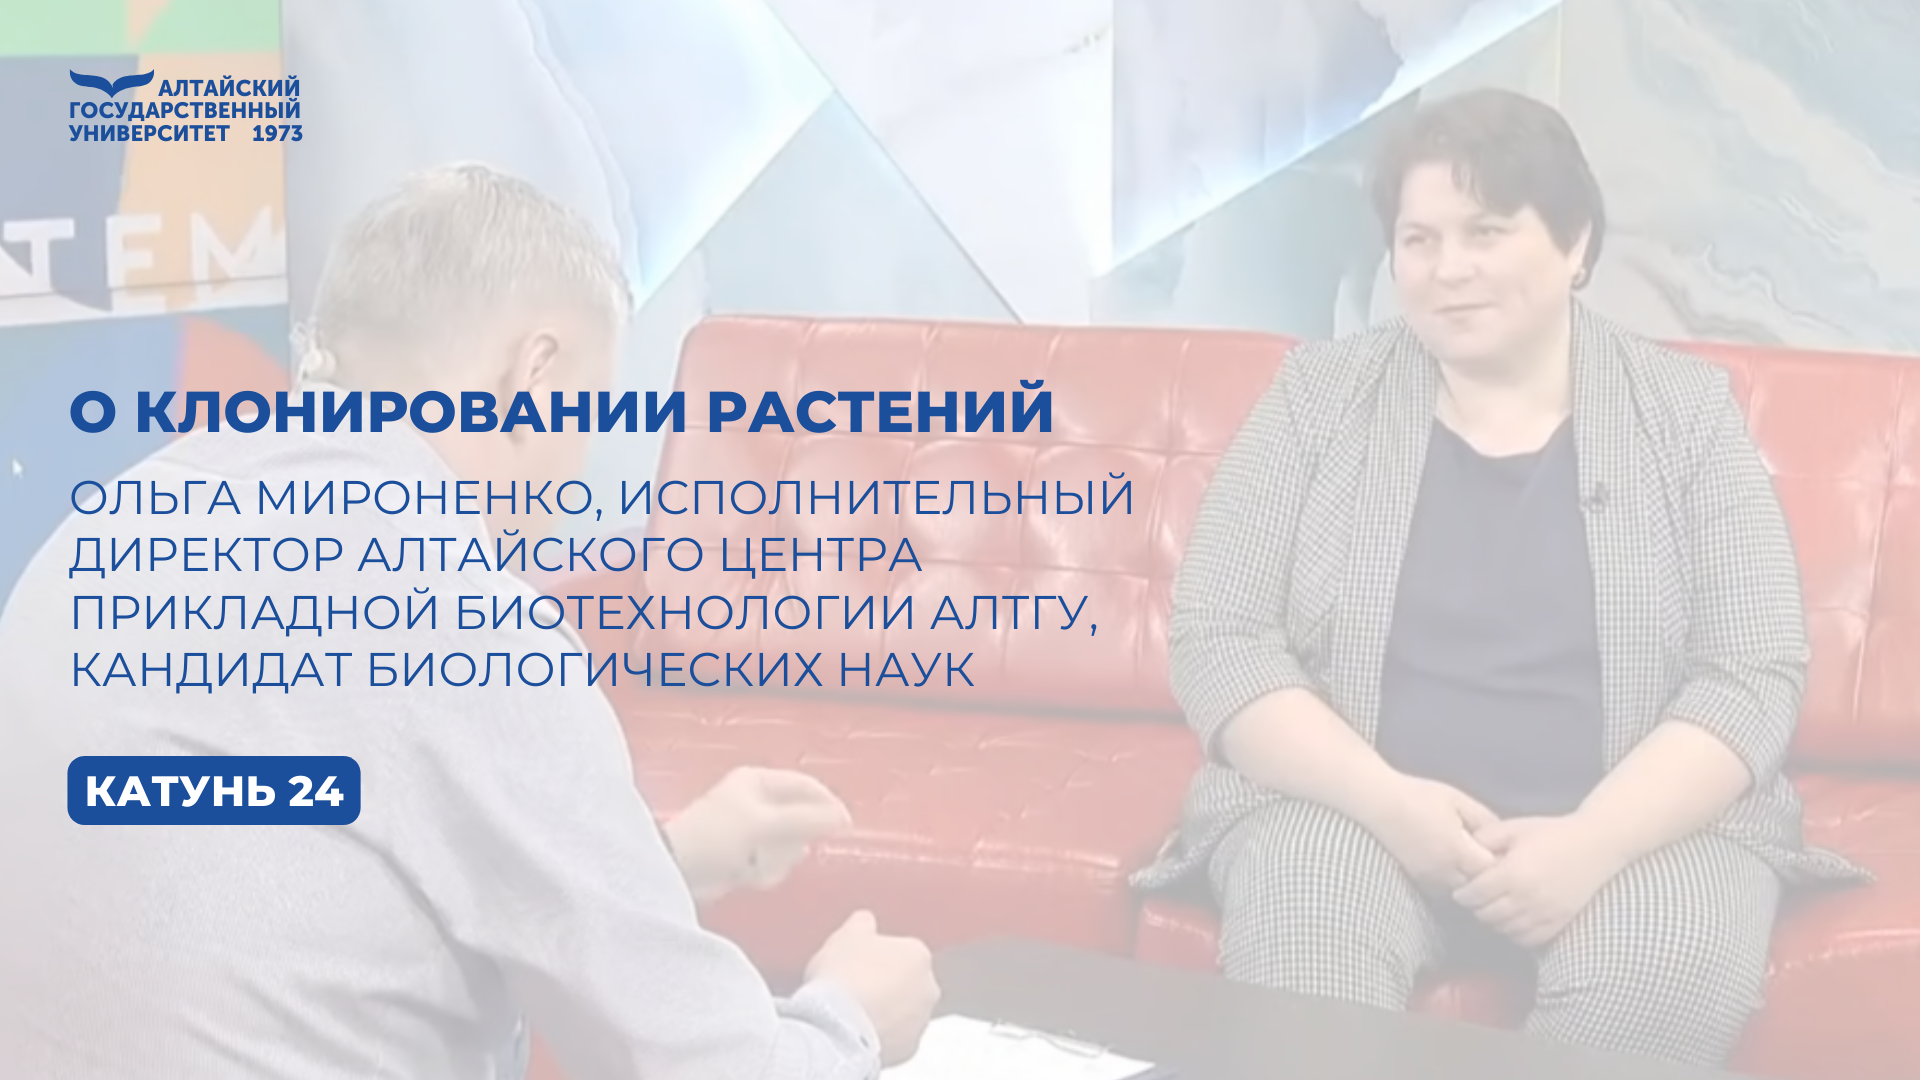 Интервью с Ольгой Мироненко, исполнительным директором Алтайского центра прикладной биотехнологии